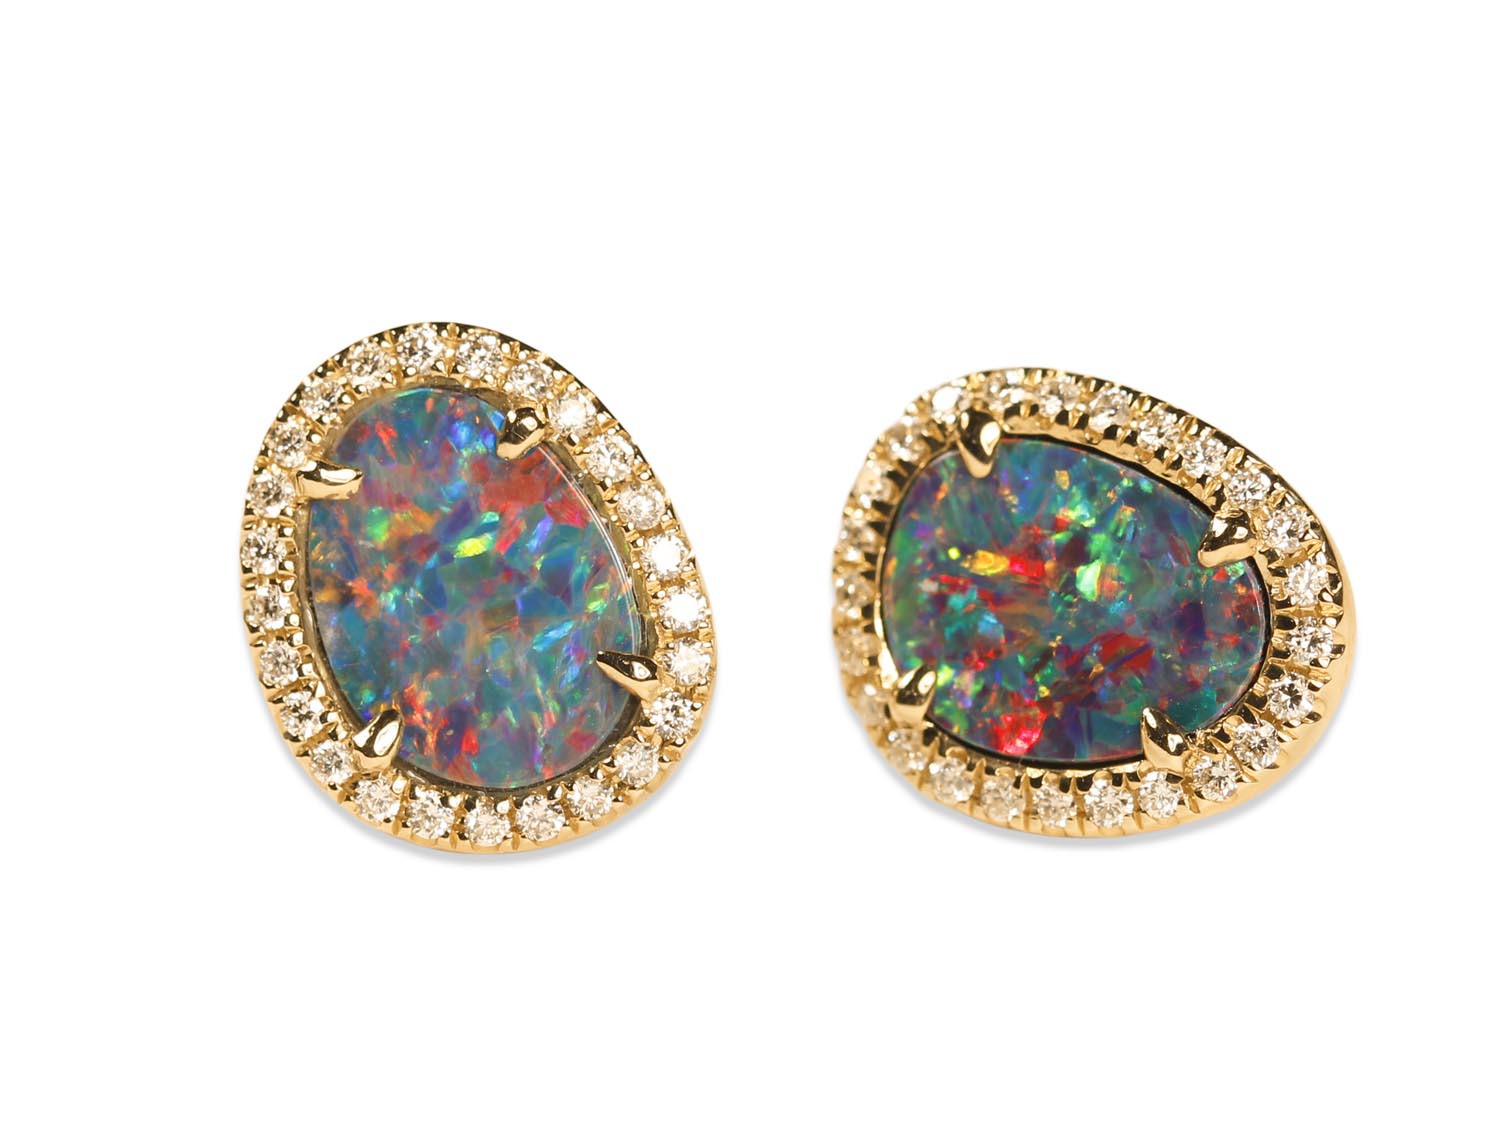 Australian Opal Doublet and Diamond Stud Earrings in 14K Yellow Gold